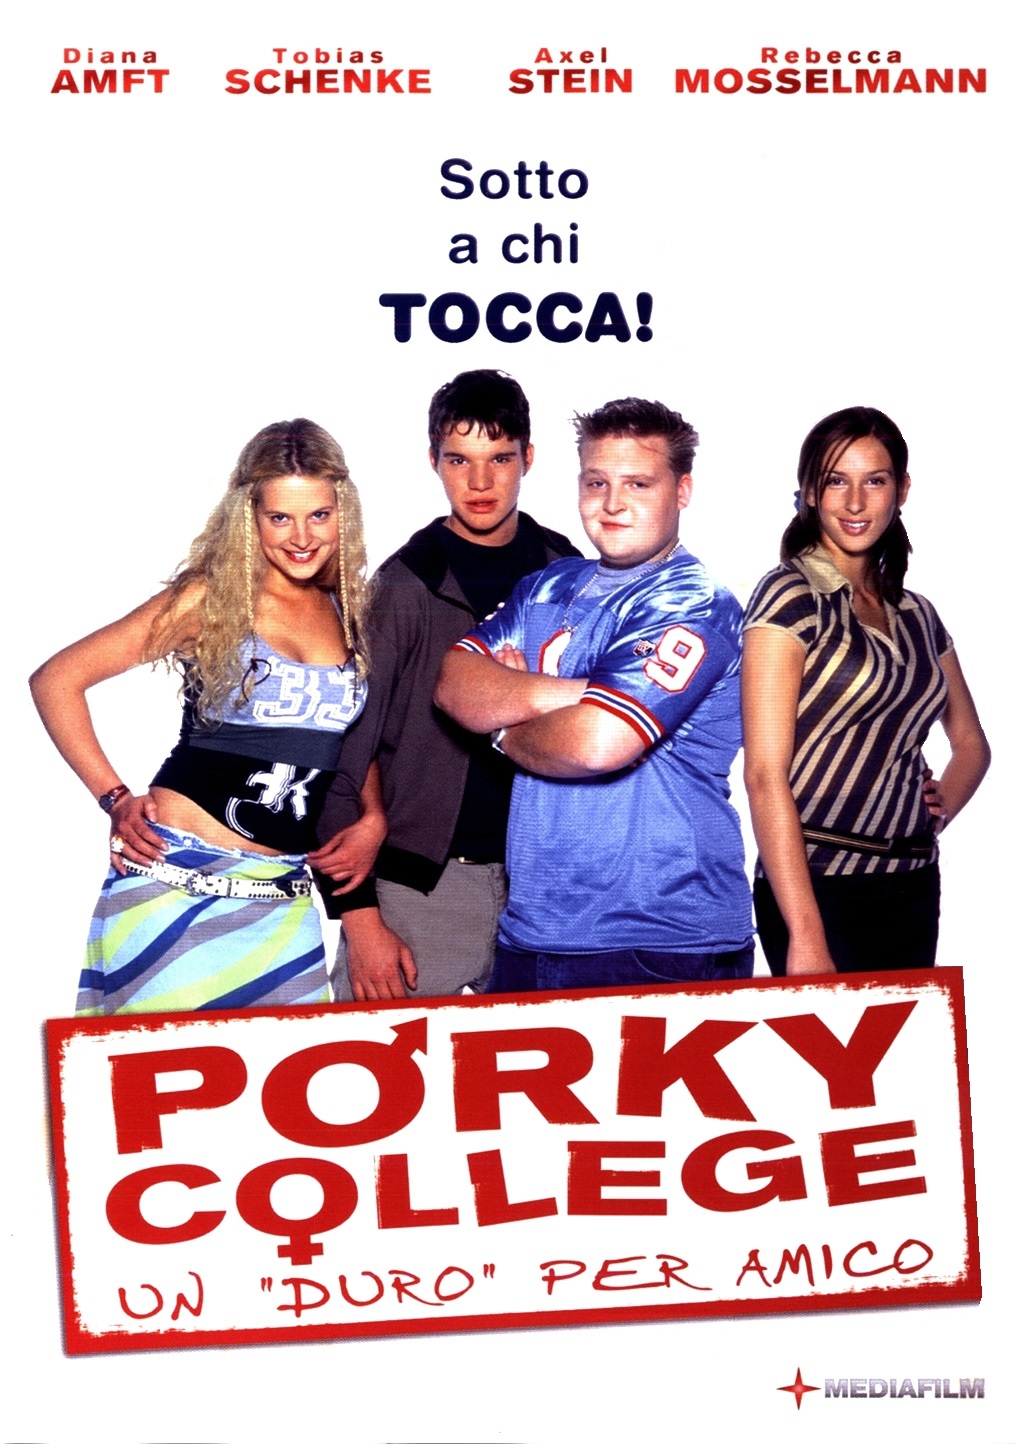 Porky college – un duro per amico (2004)